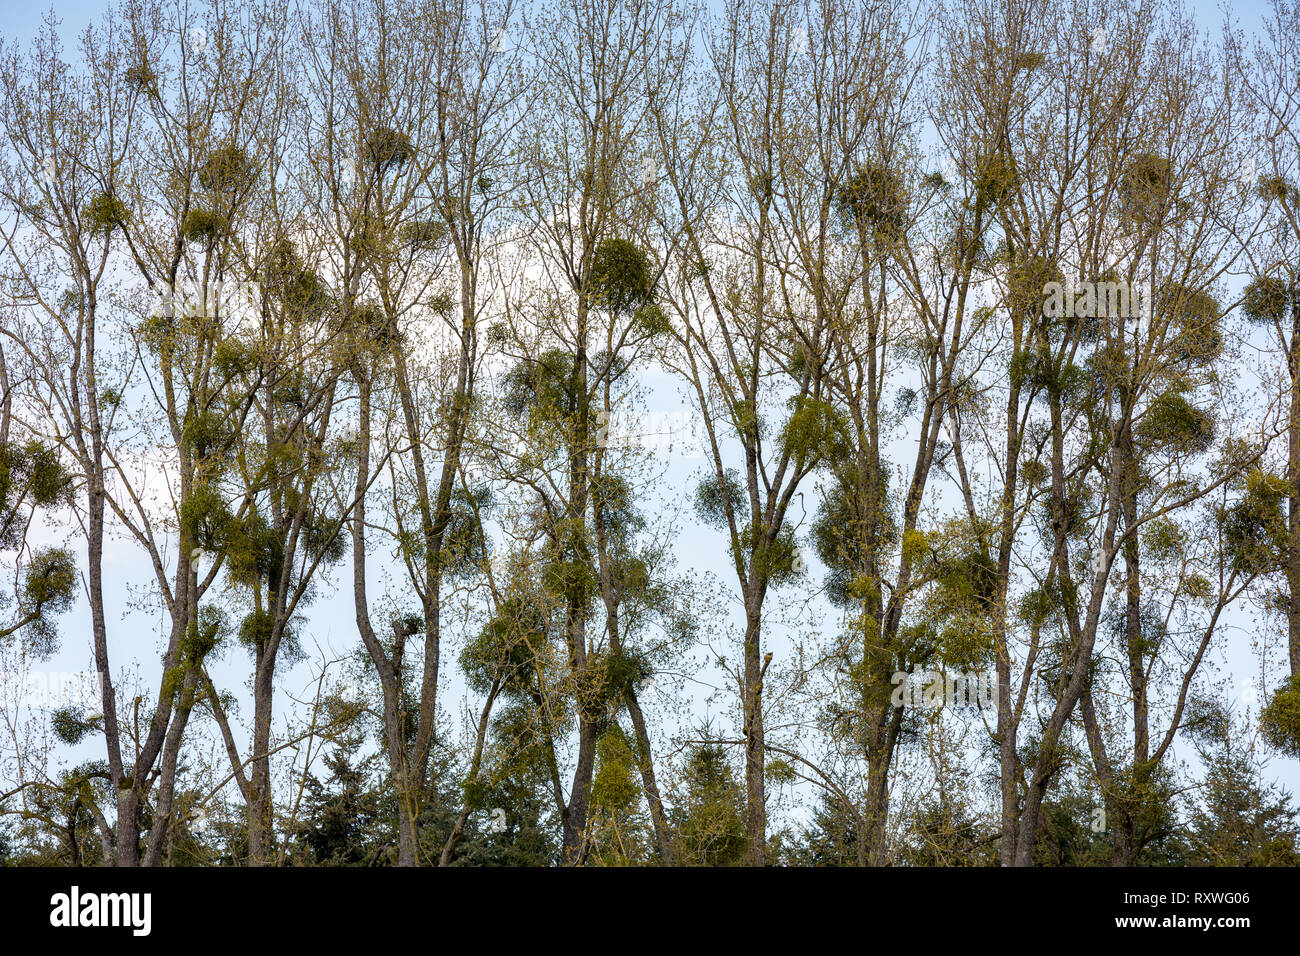 Mistletoe (Viscum album), an obligate stem hemiparasite on Poplar trees in early spring. Stock Photo